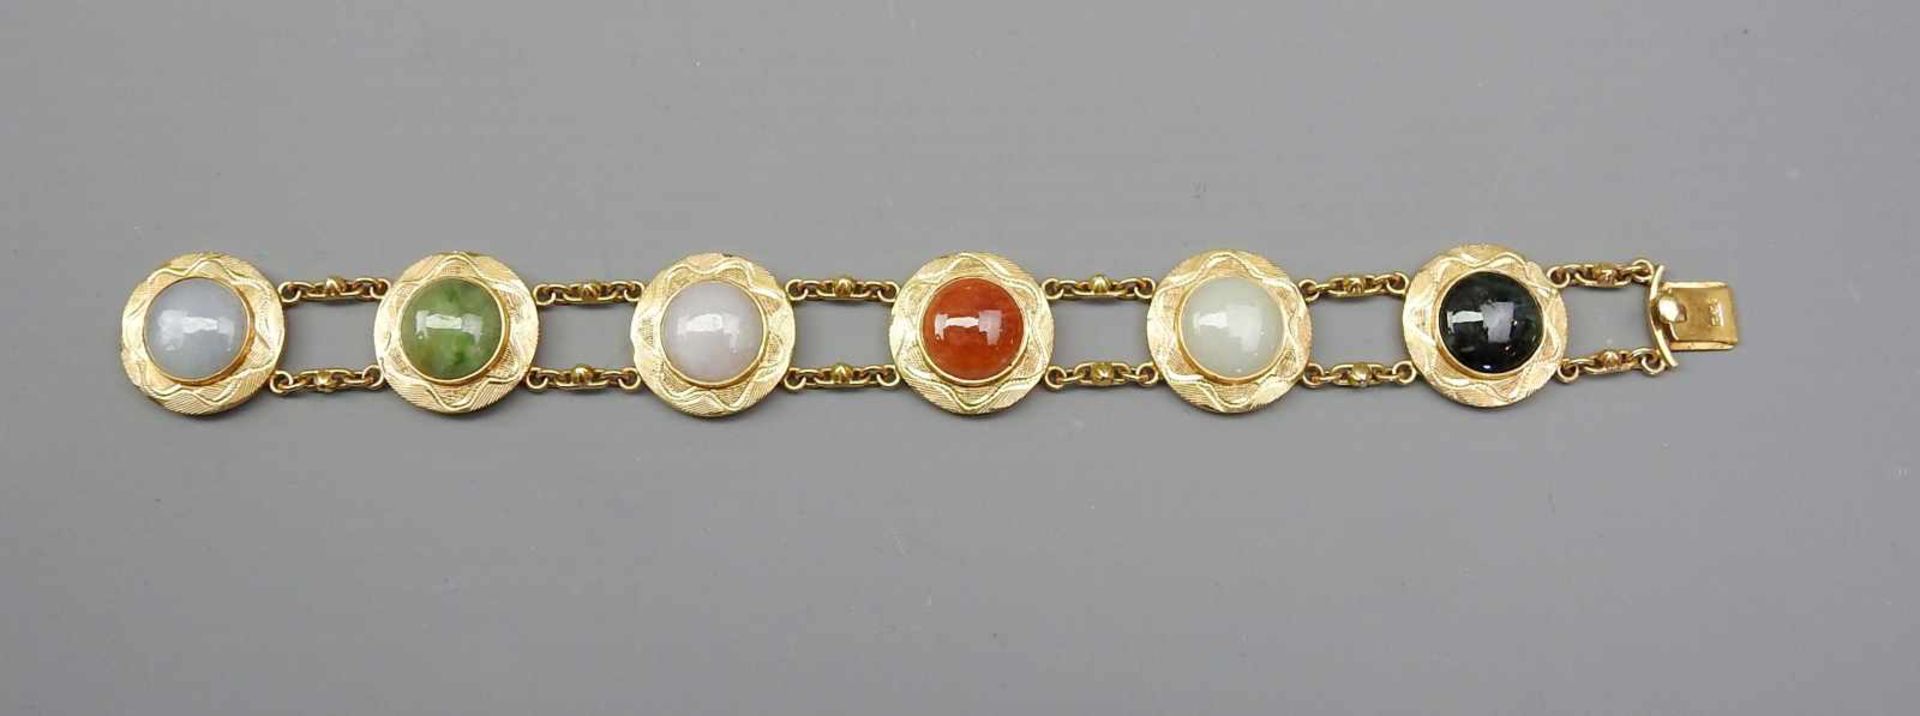 Farbstein-Armband18 K. Gold, mit verschiedenen Farbsteinen und feiner Gravur. Wohl Osmanisch, 80er